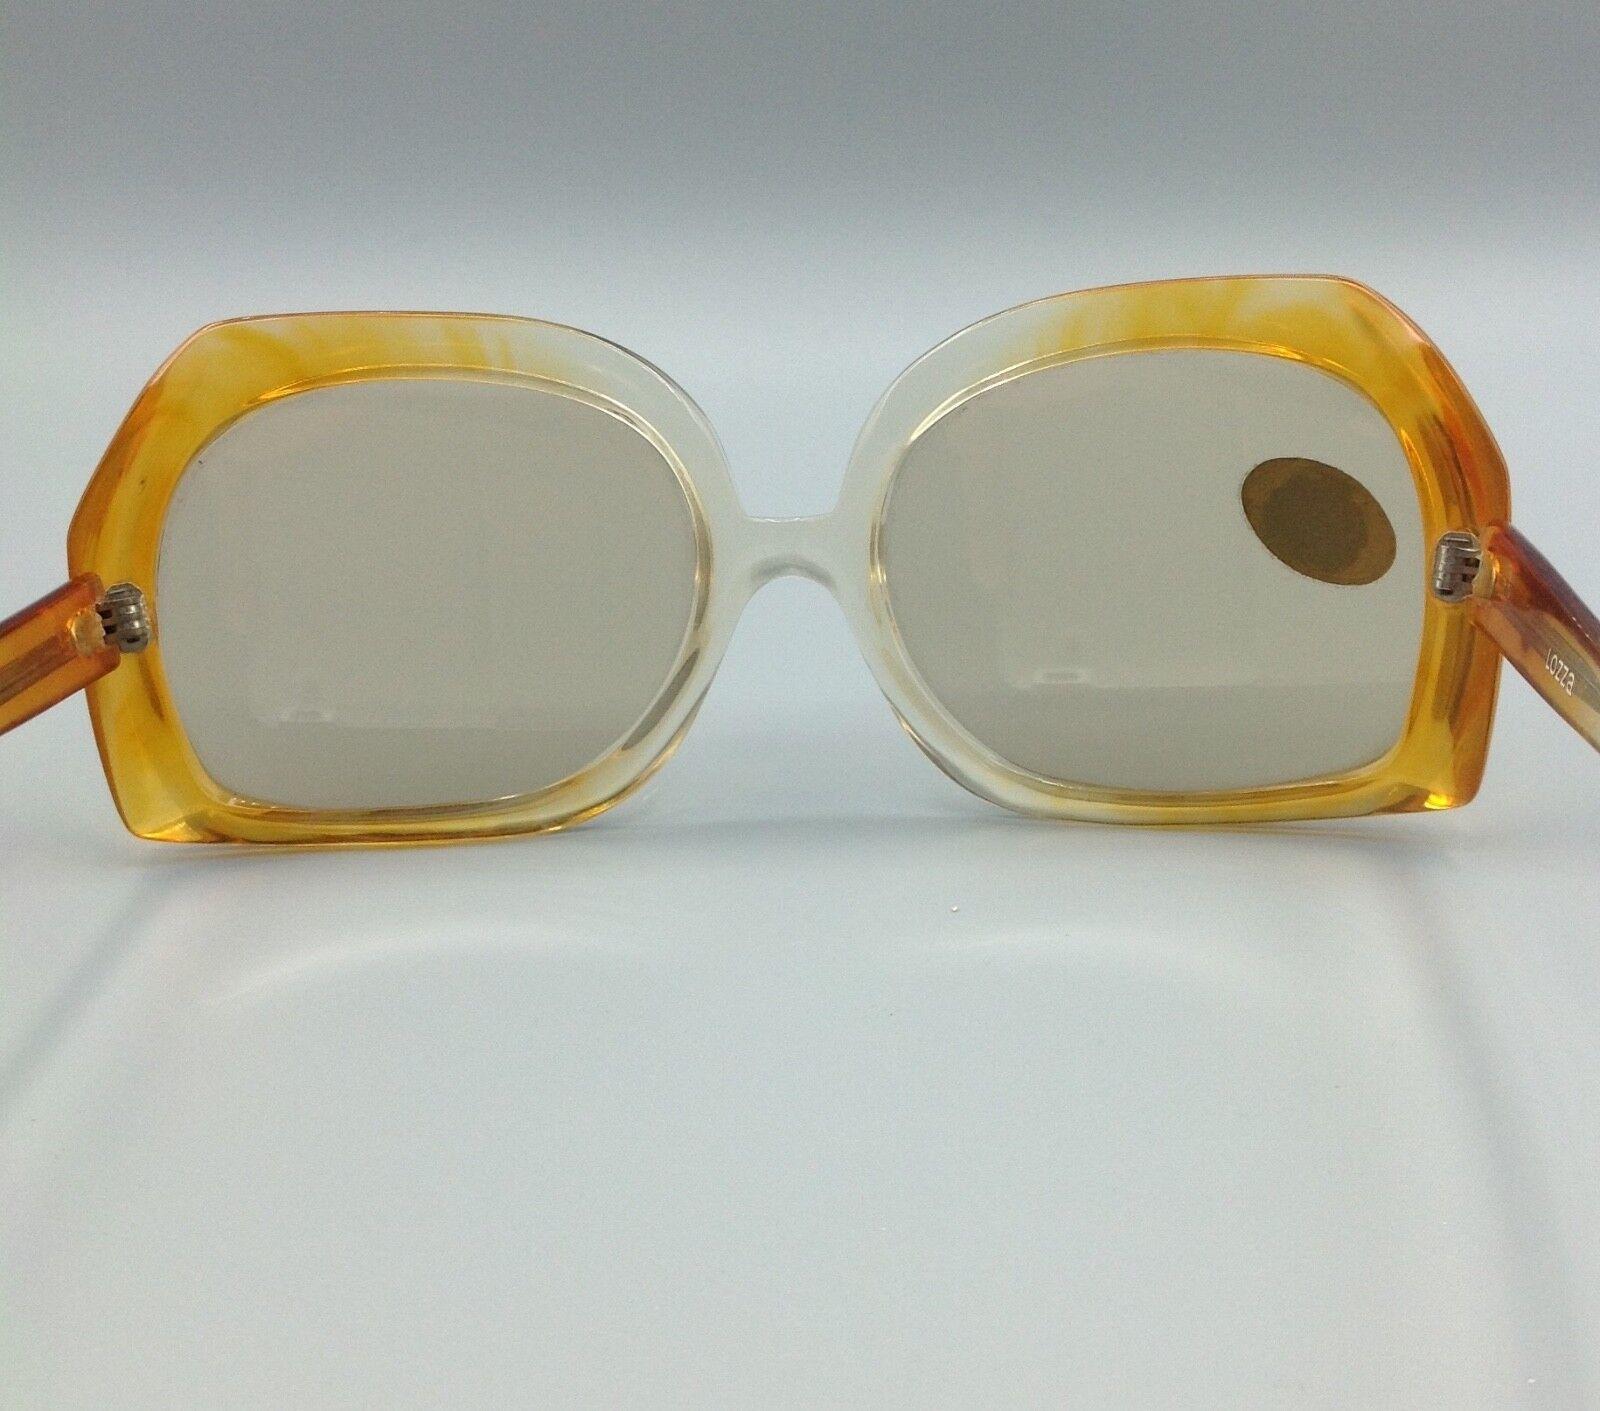 occhiale da sole LOZZA MYRIA vintage sunglasses made in Italy Lozza Myria